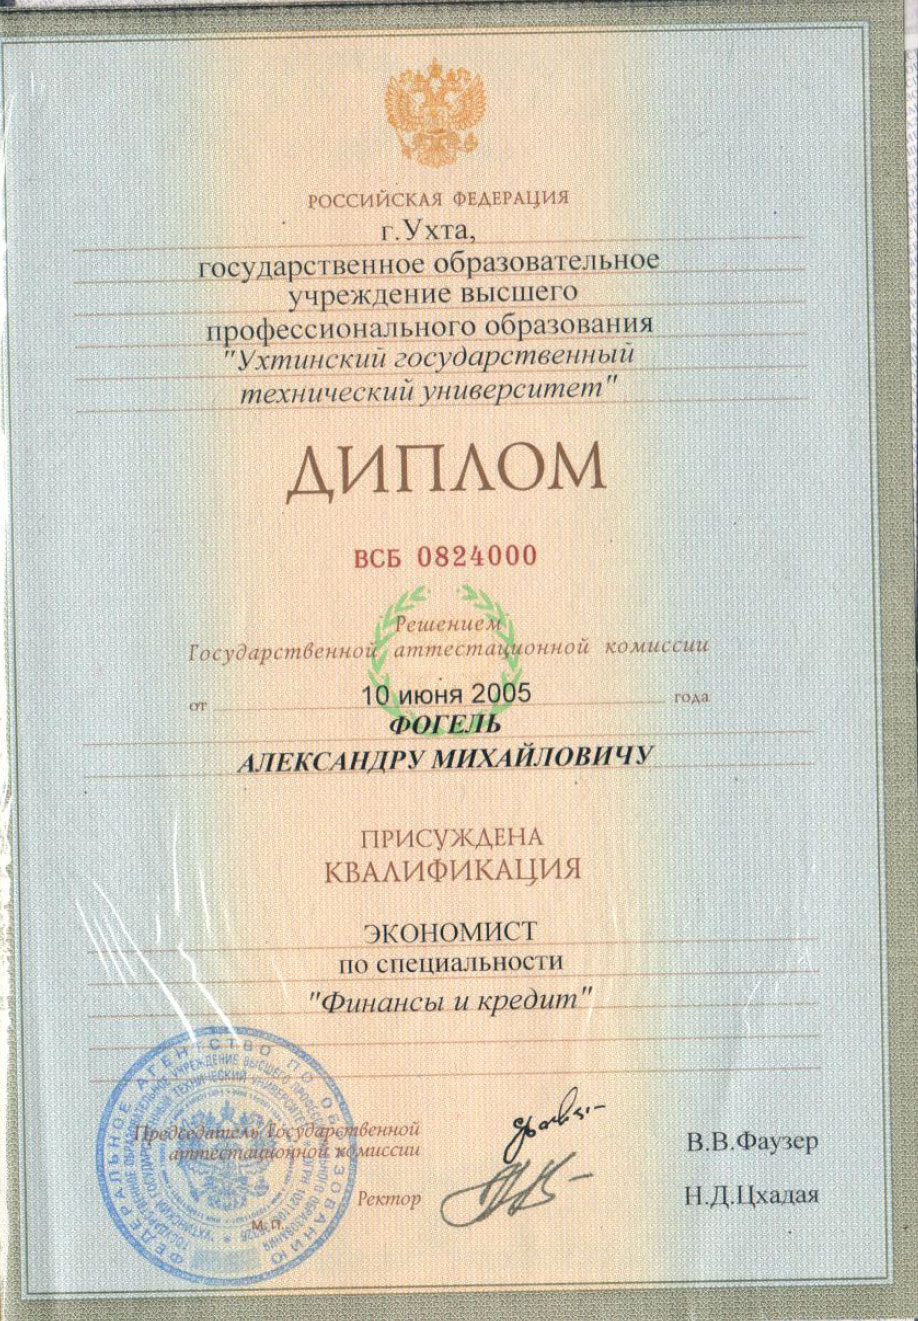 Изображение примера сертификата